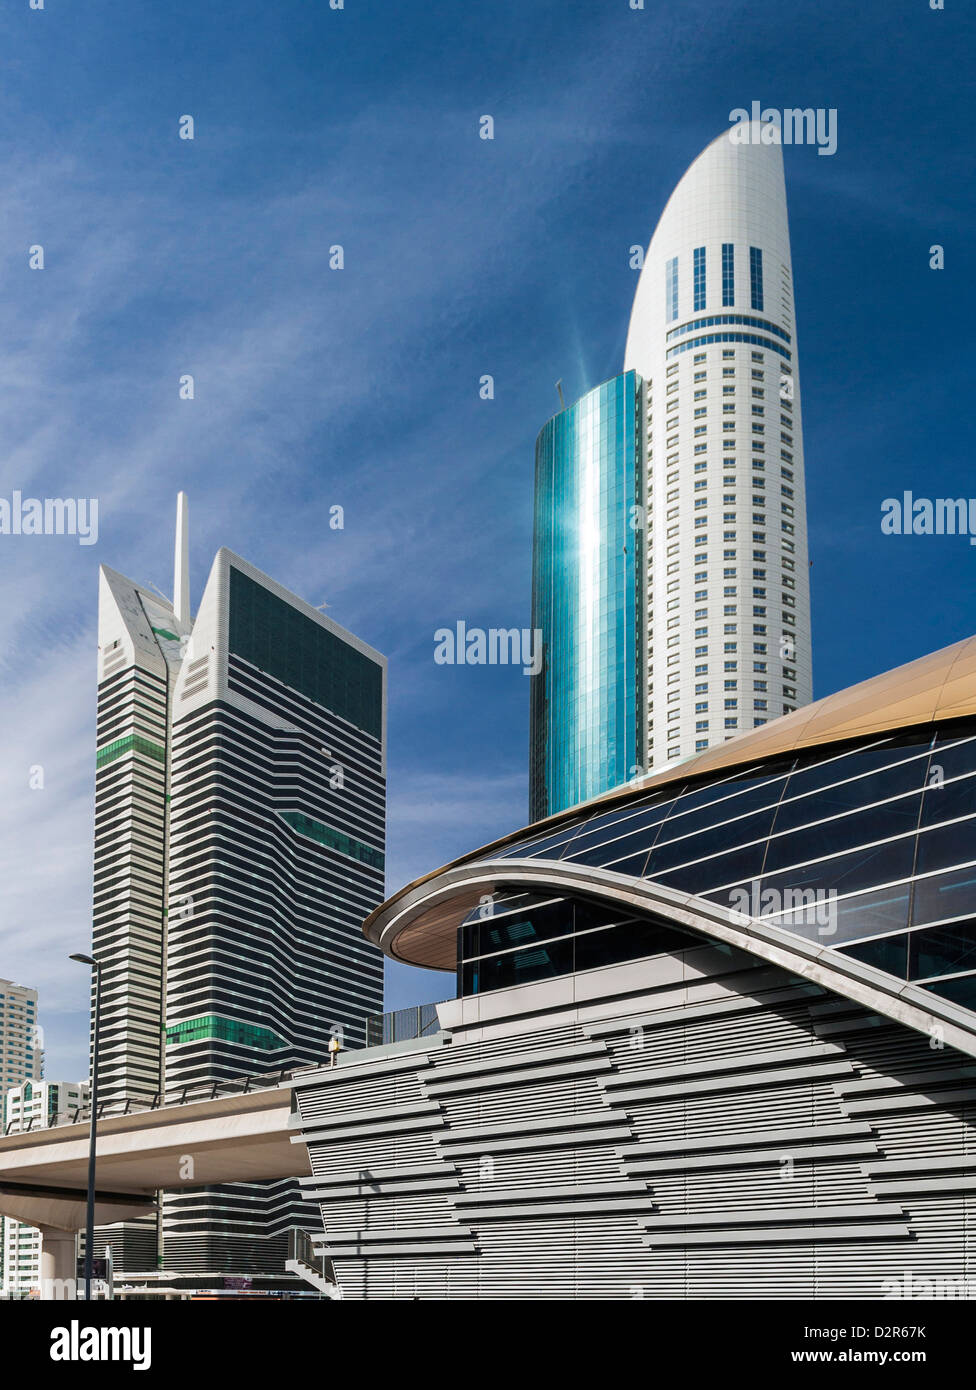 La station de métro World Trade Center avec toit incurvé, Dubaï Banque D'Images